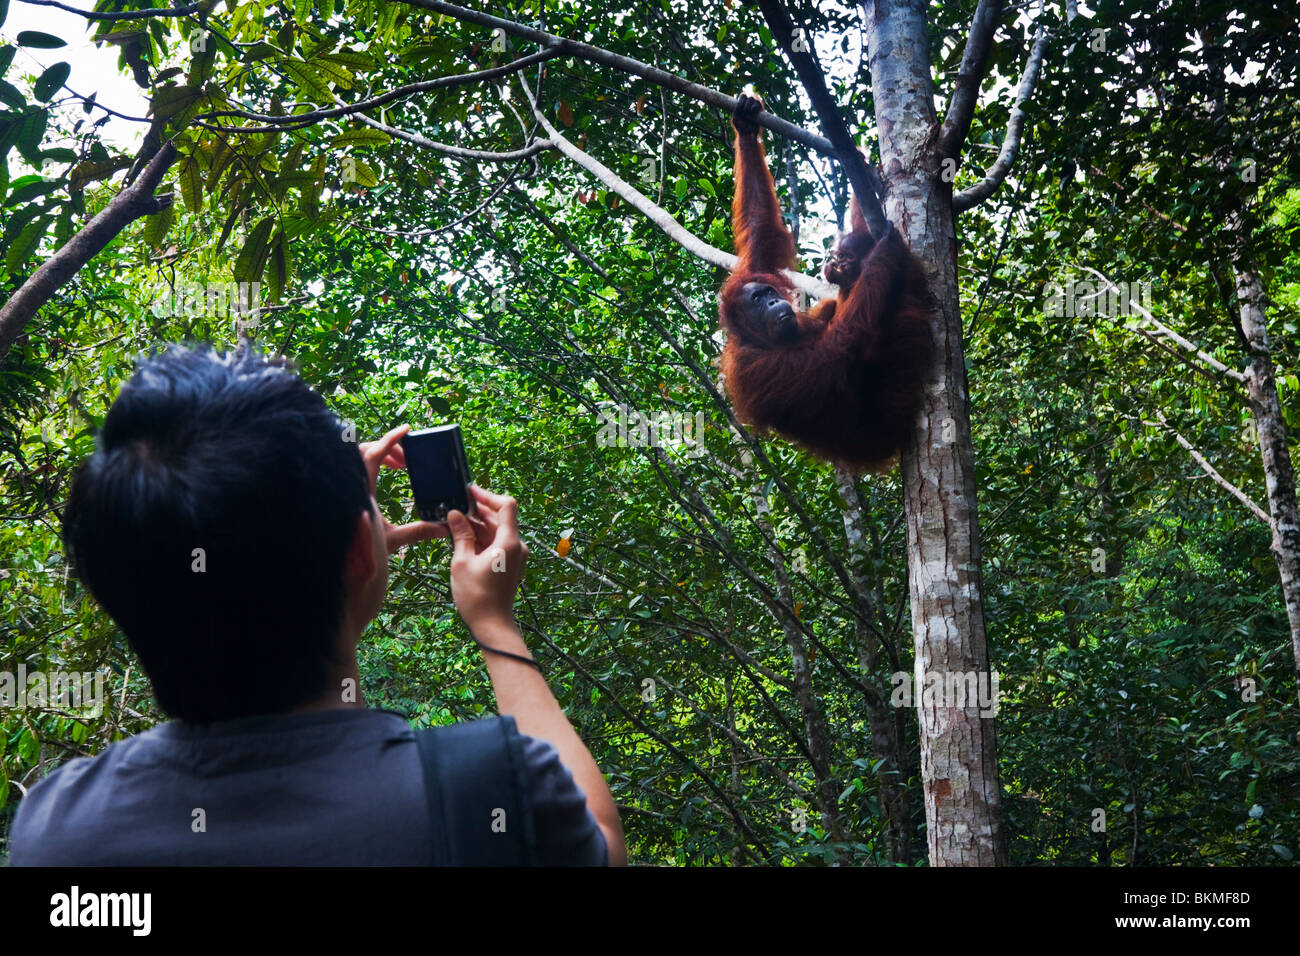 Photographier une touristiques orangutan (Pongo pygmaeus) à l'Semenngoh Wildlife Centre. Kuching, Sarawak, Bornéo, Malaisie. Banque D'Images